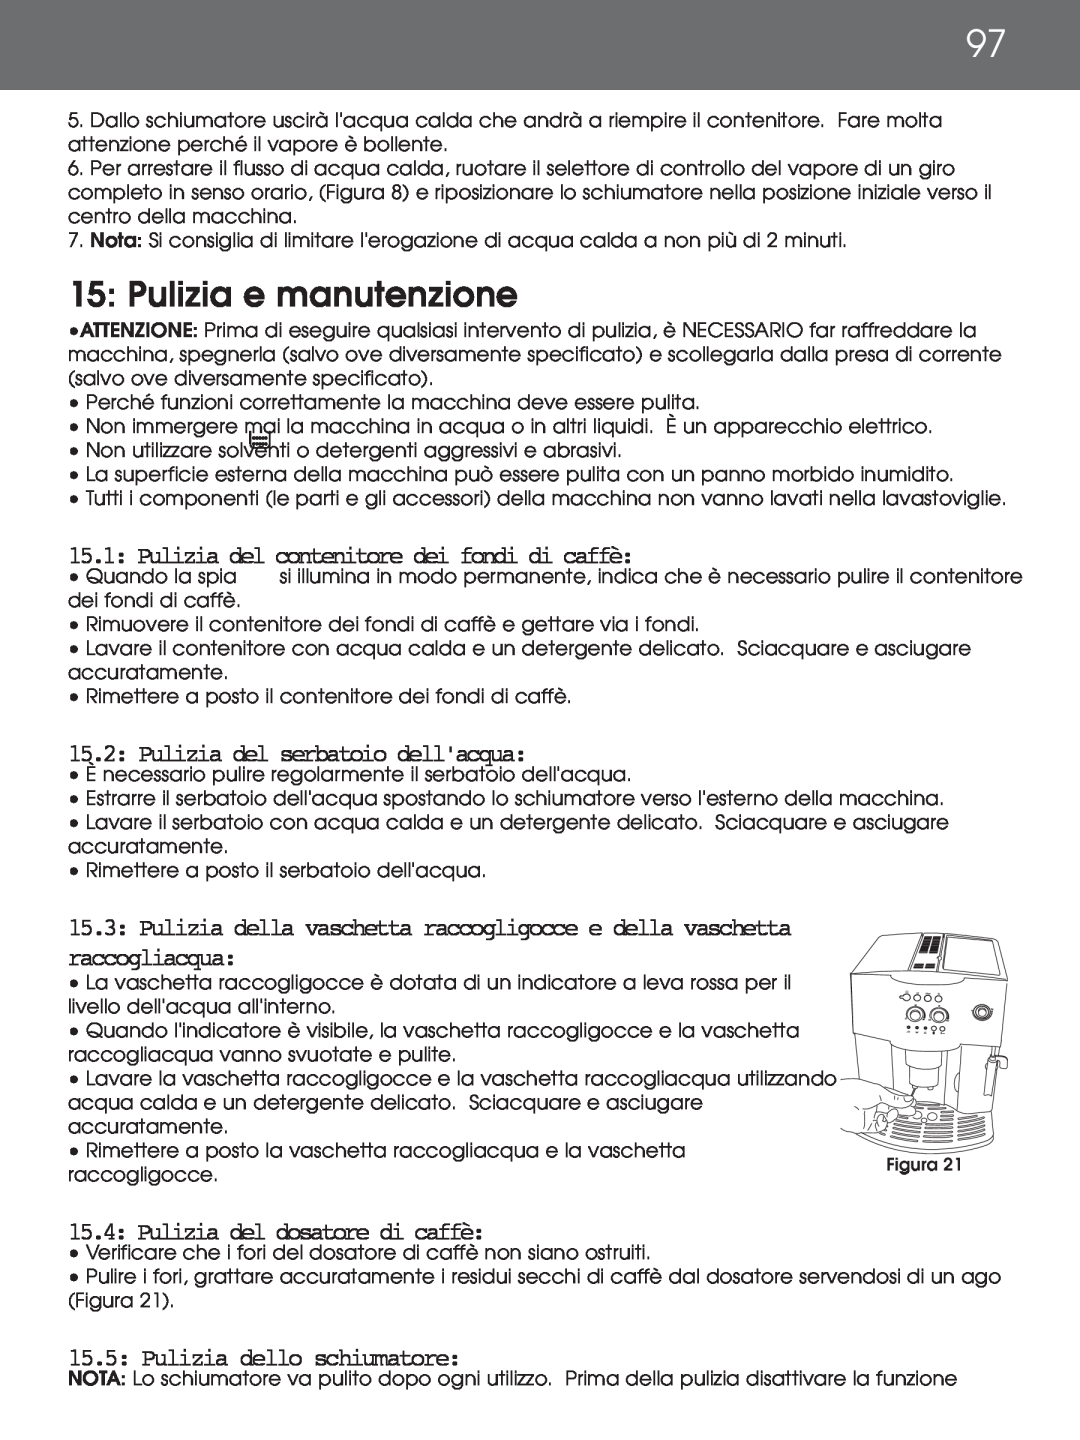 DeLonghi EAM4000 instruction manual 15: Pulizia e manutenzione, 15.1: Pulizia del contenitore dei fondi di caffè 